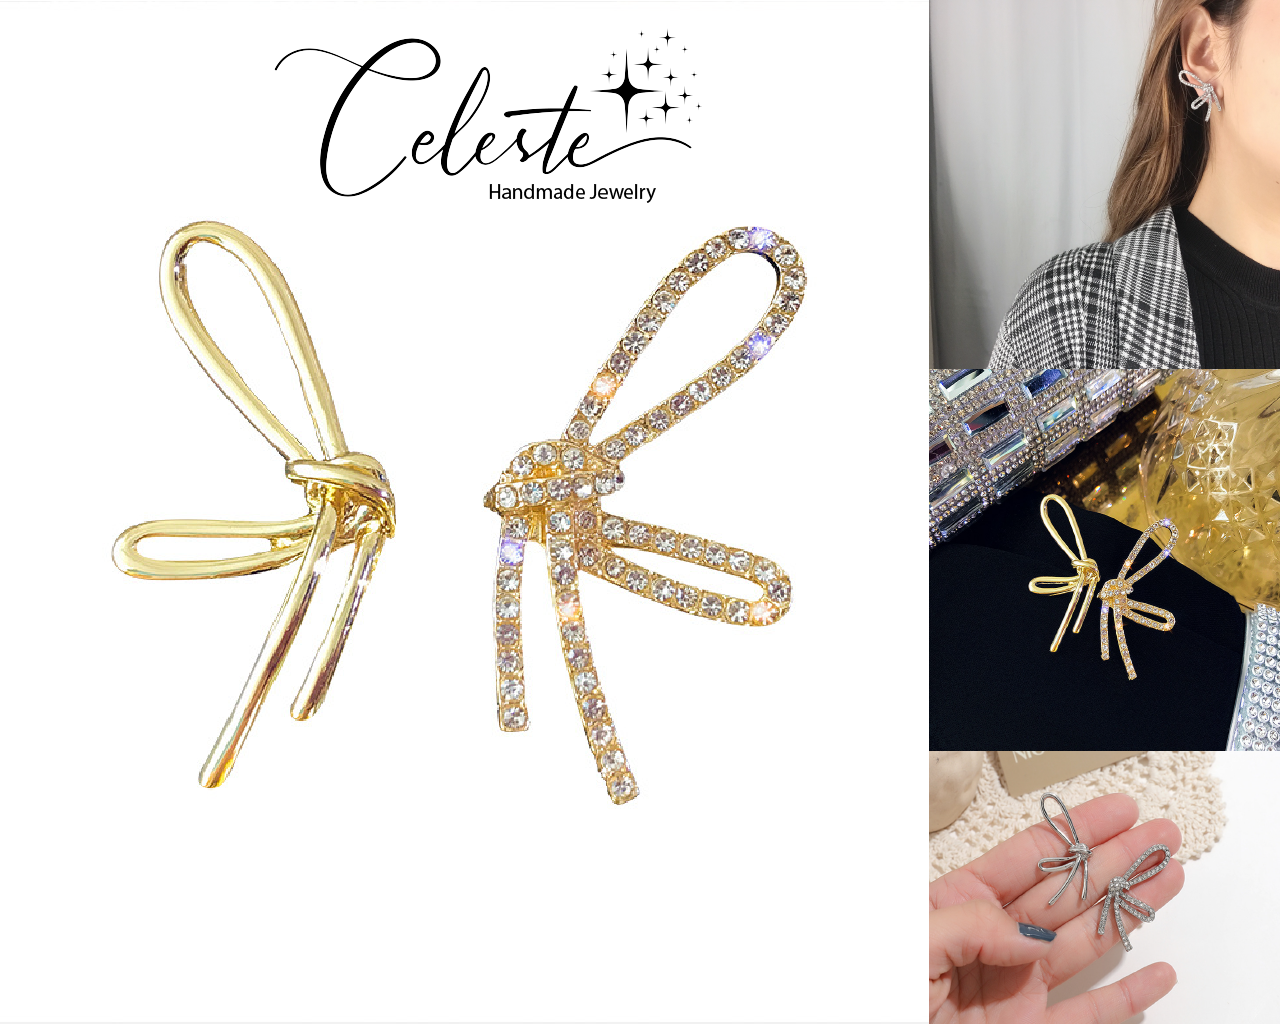 J - Bow Knot Butterfly 925 Sterling Silver Earrings Designer Crystal Earring Jewelry Gift Women